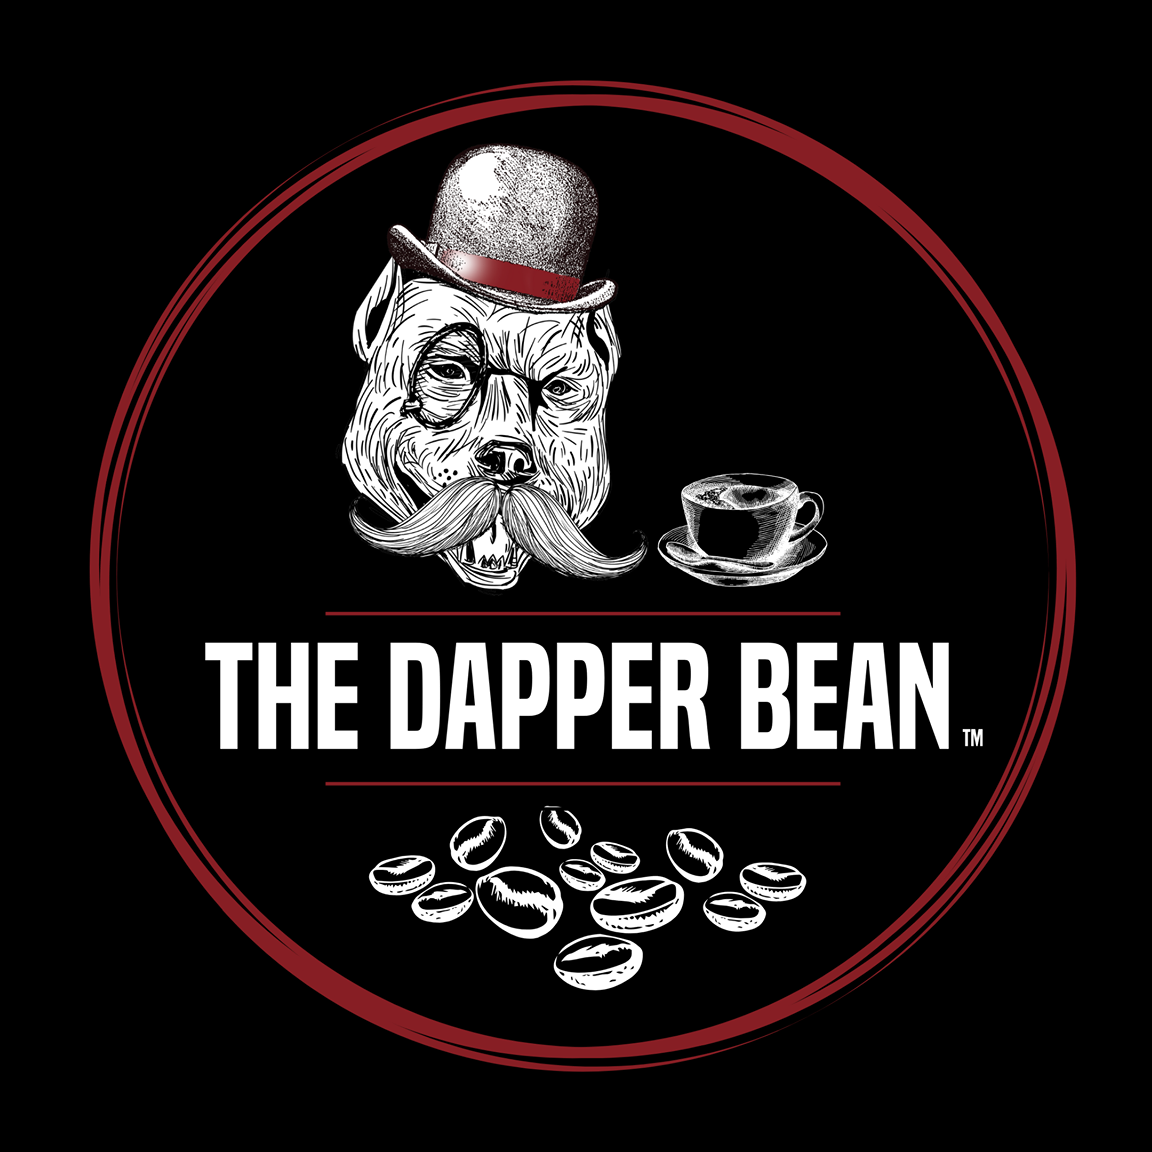 The Dapper Bean